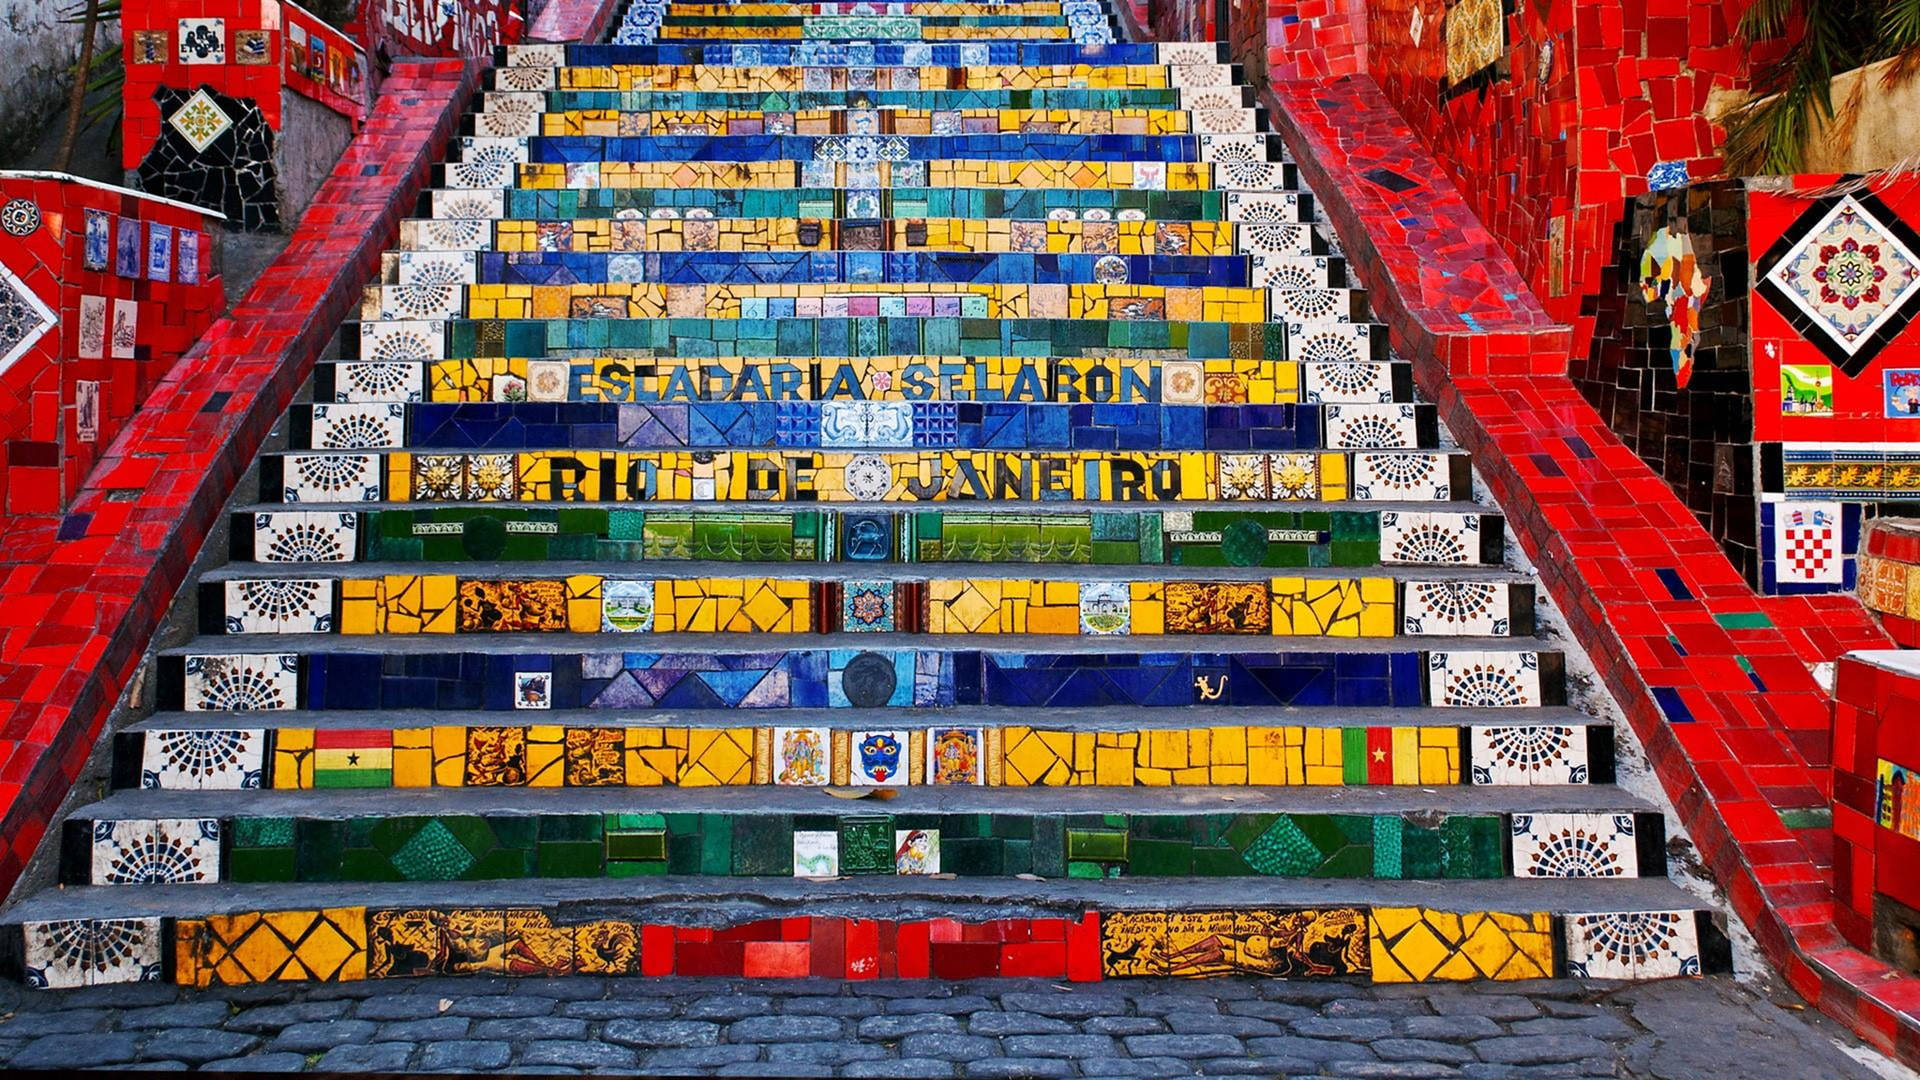 Brasilianischeselaron-treppen Wallpaper